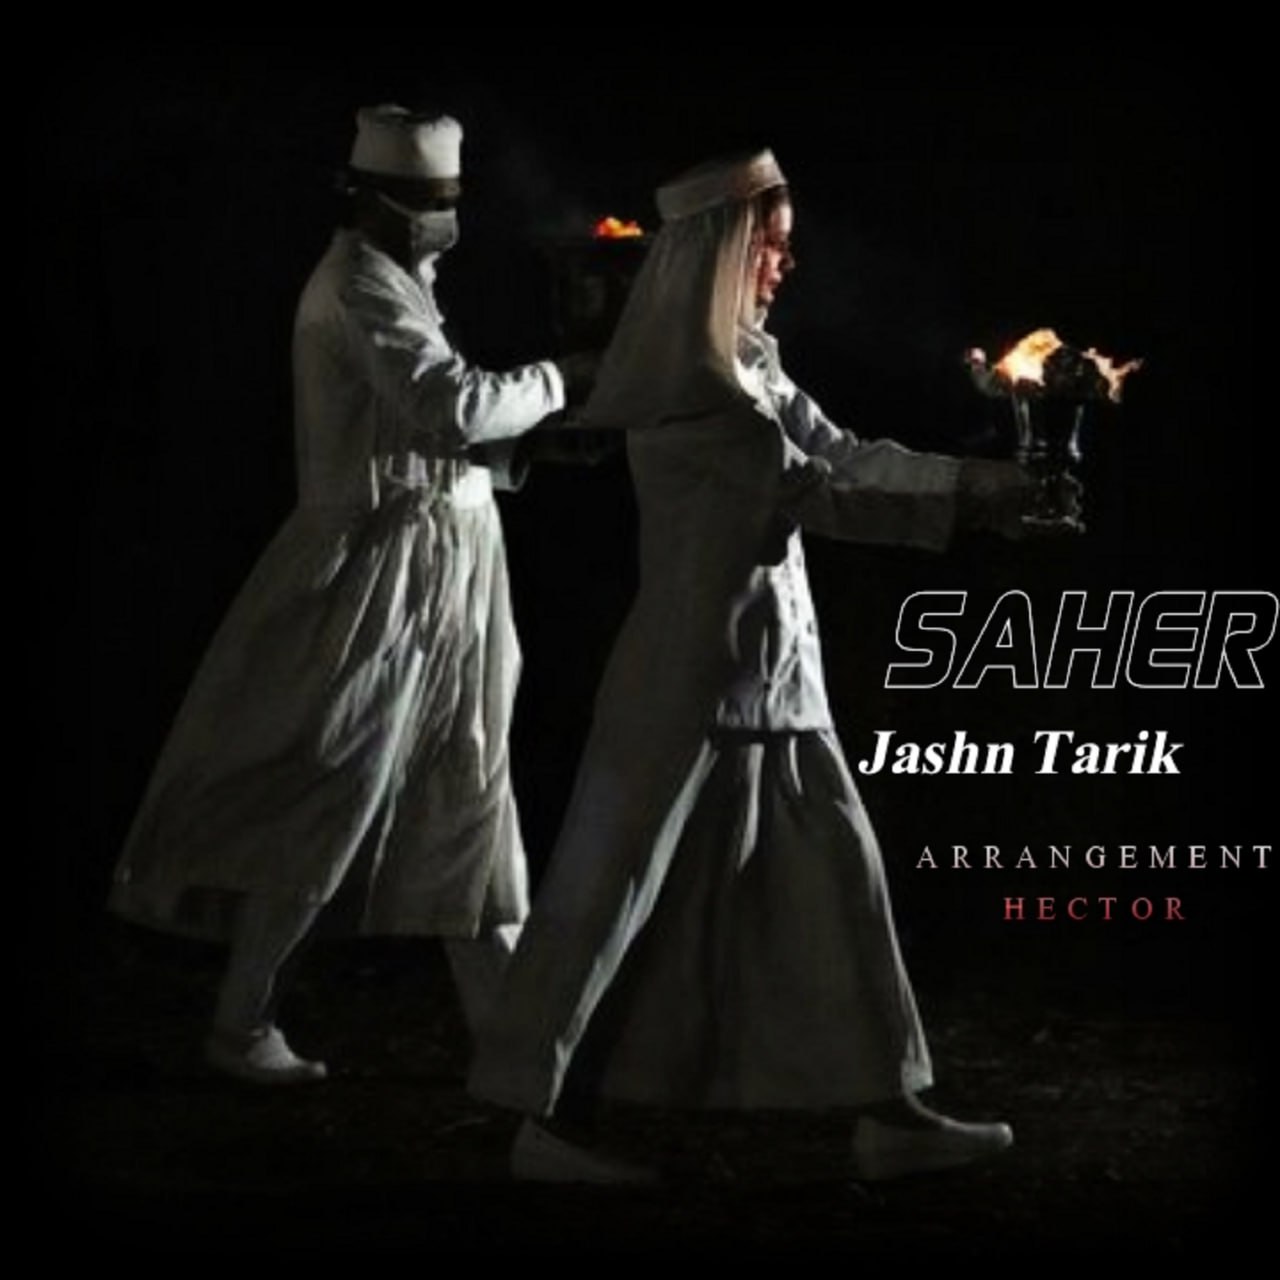 Saher – Jashne Tarik